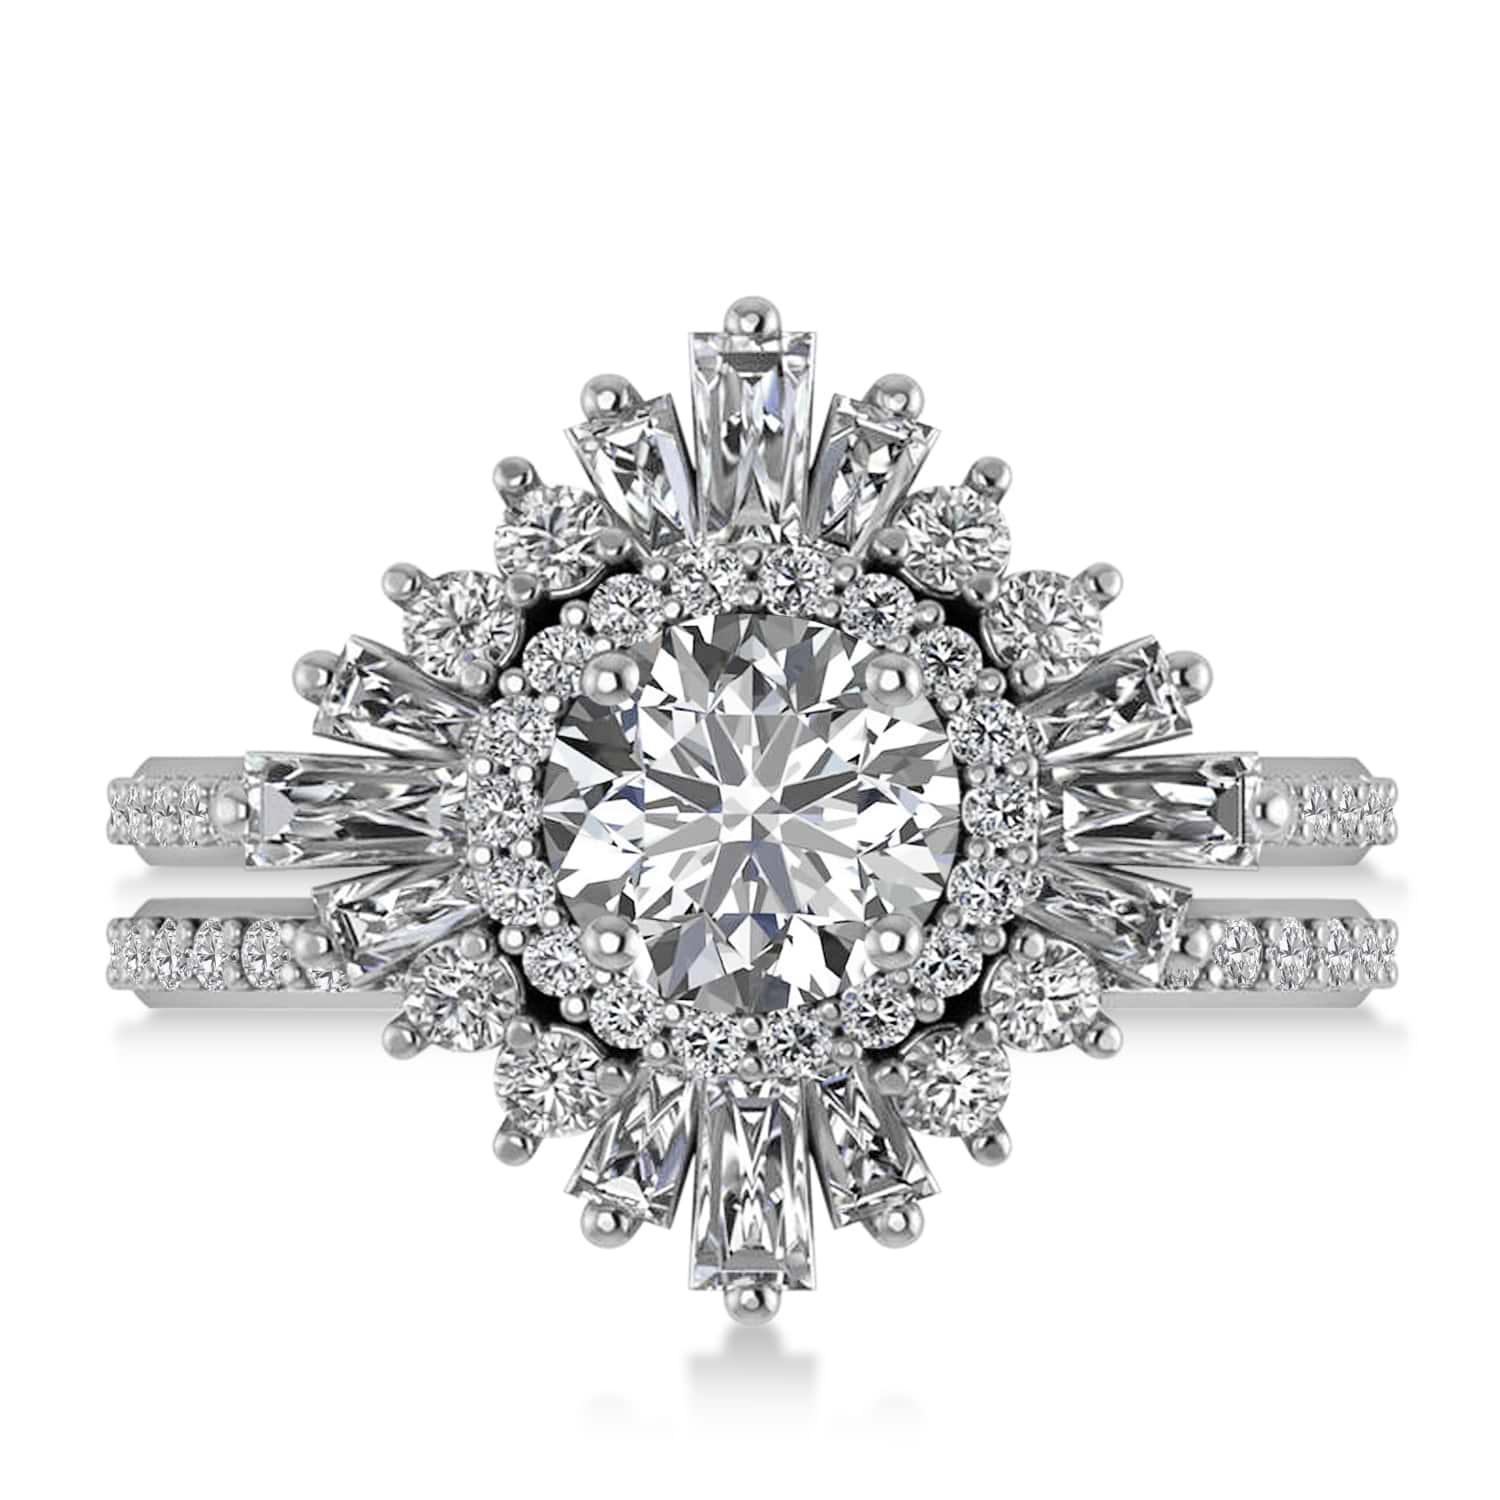 Diamond Ballerina Engagement Ring Platinum (2.74 ctw)